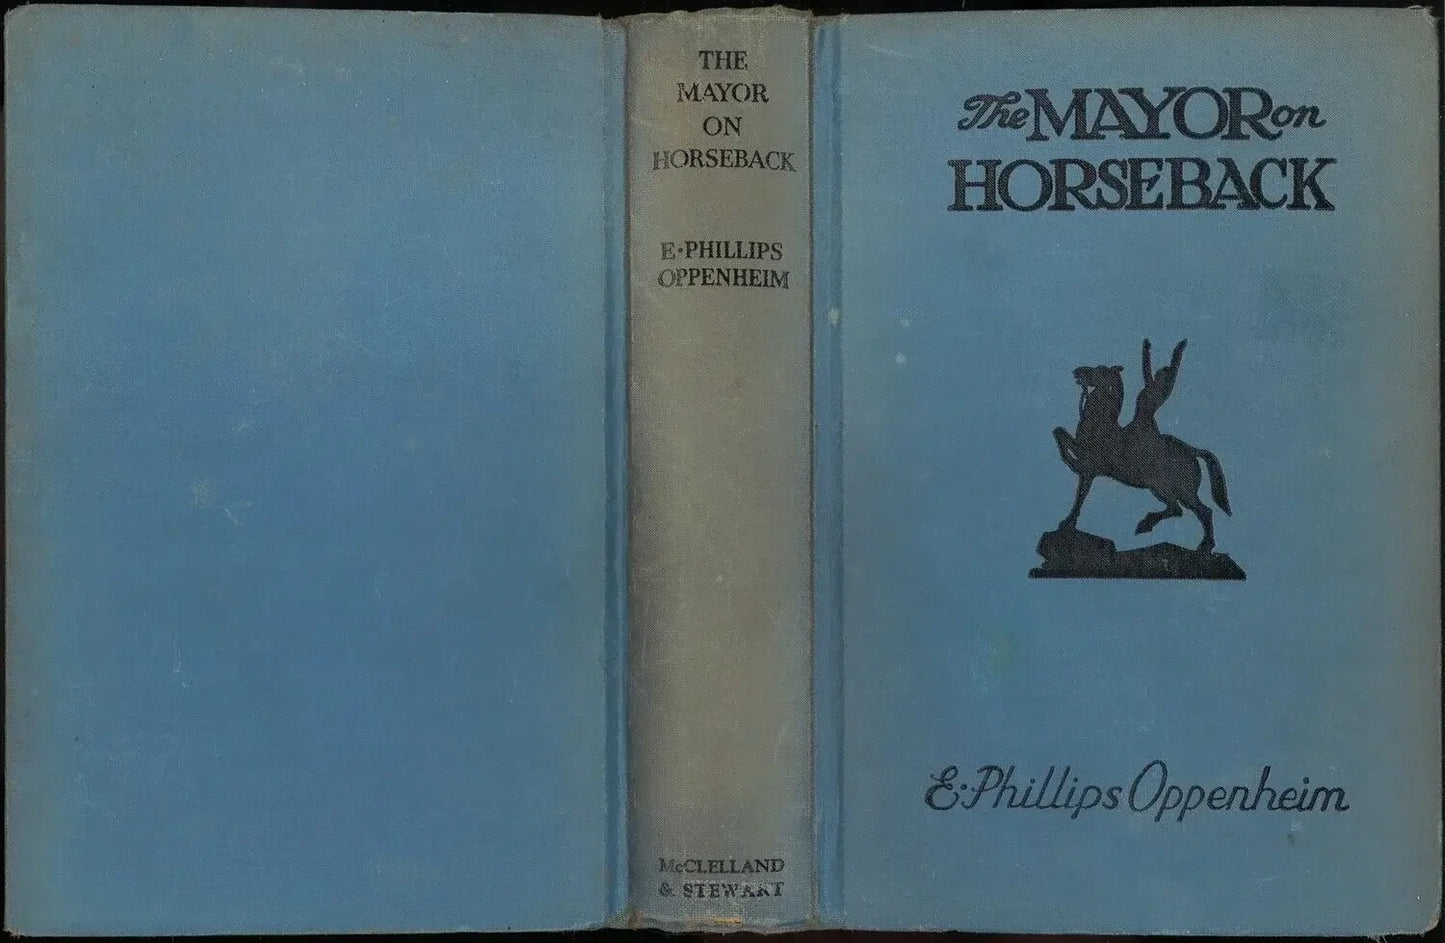 The Mayor on Horseback by E. Phillips Oppenheim